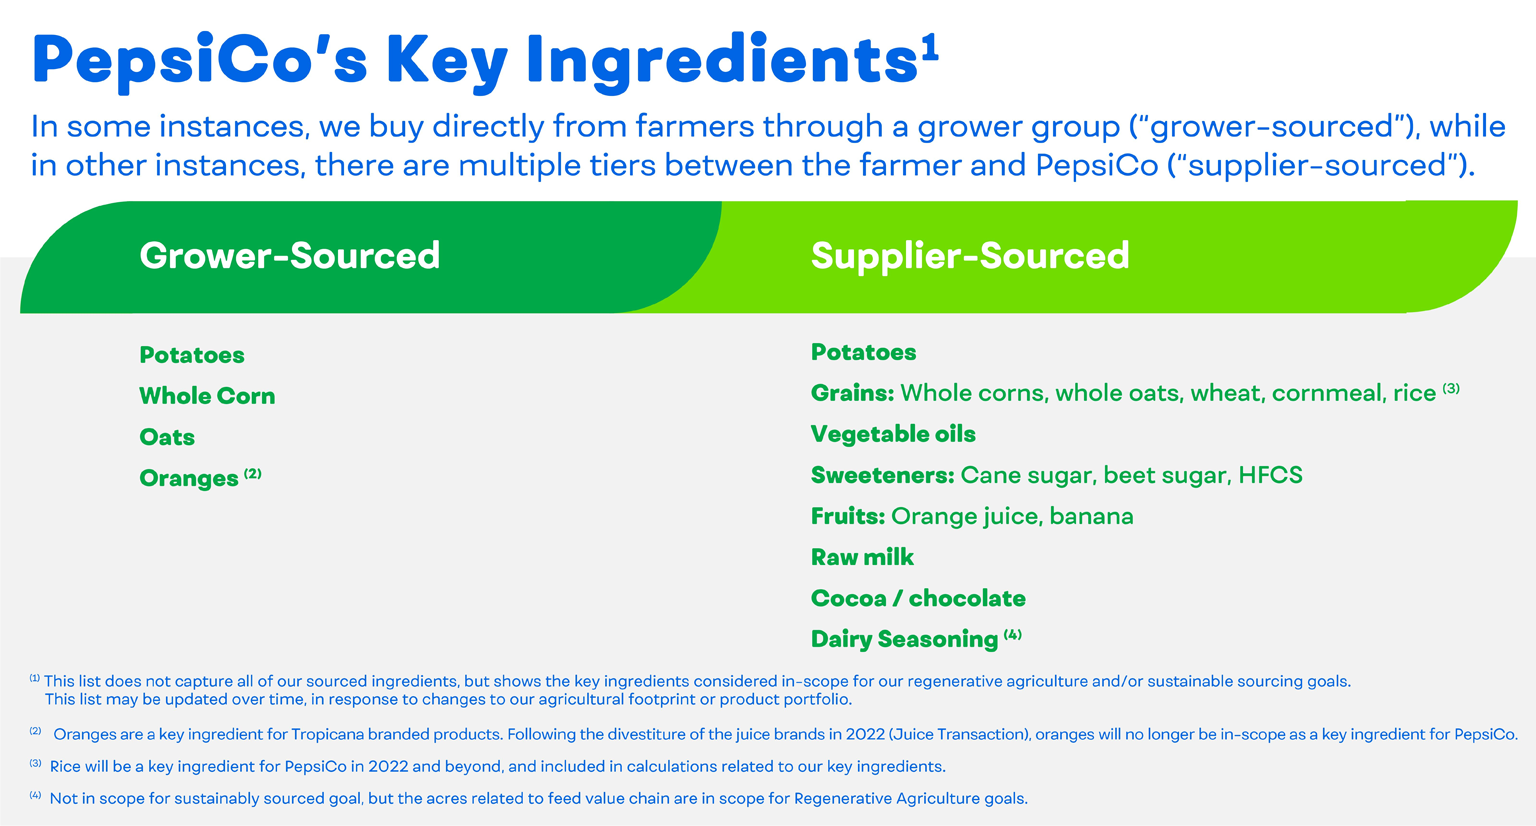 PepsiCo's Key Ingredients